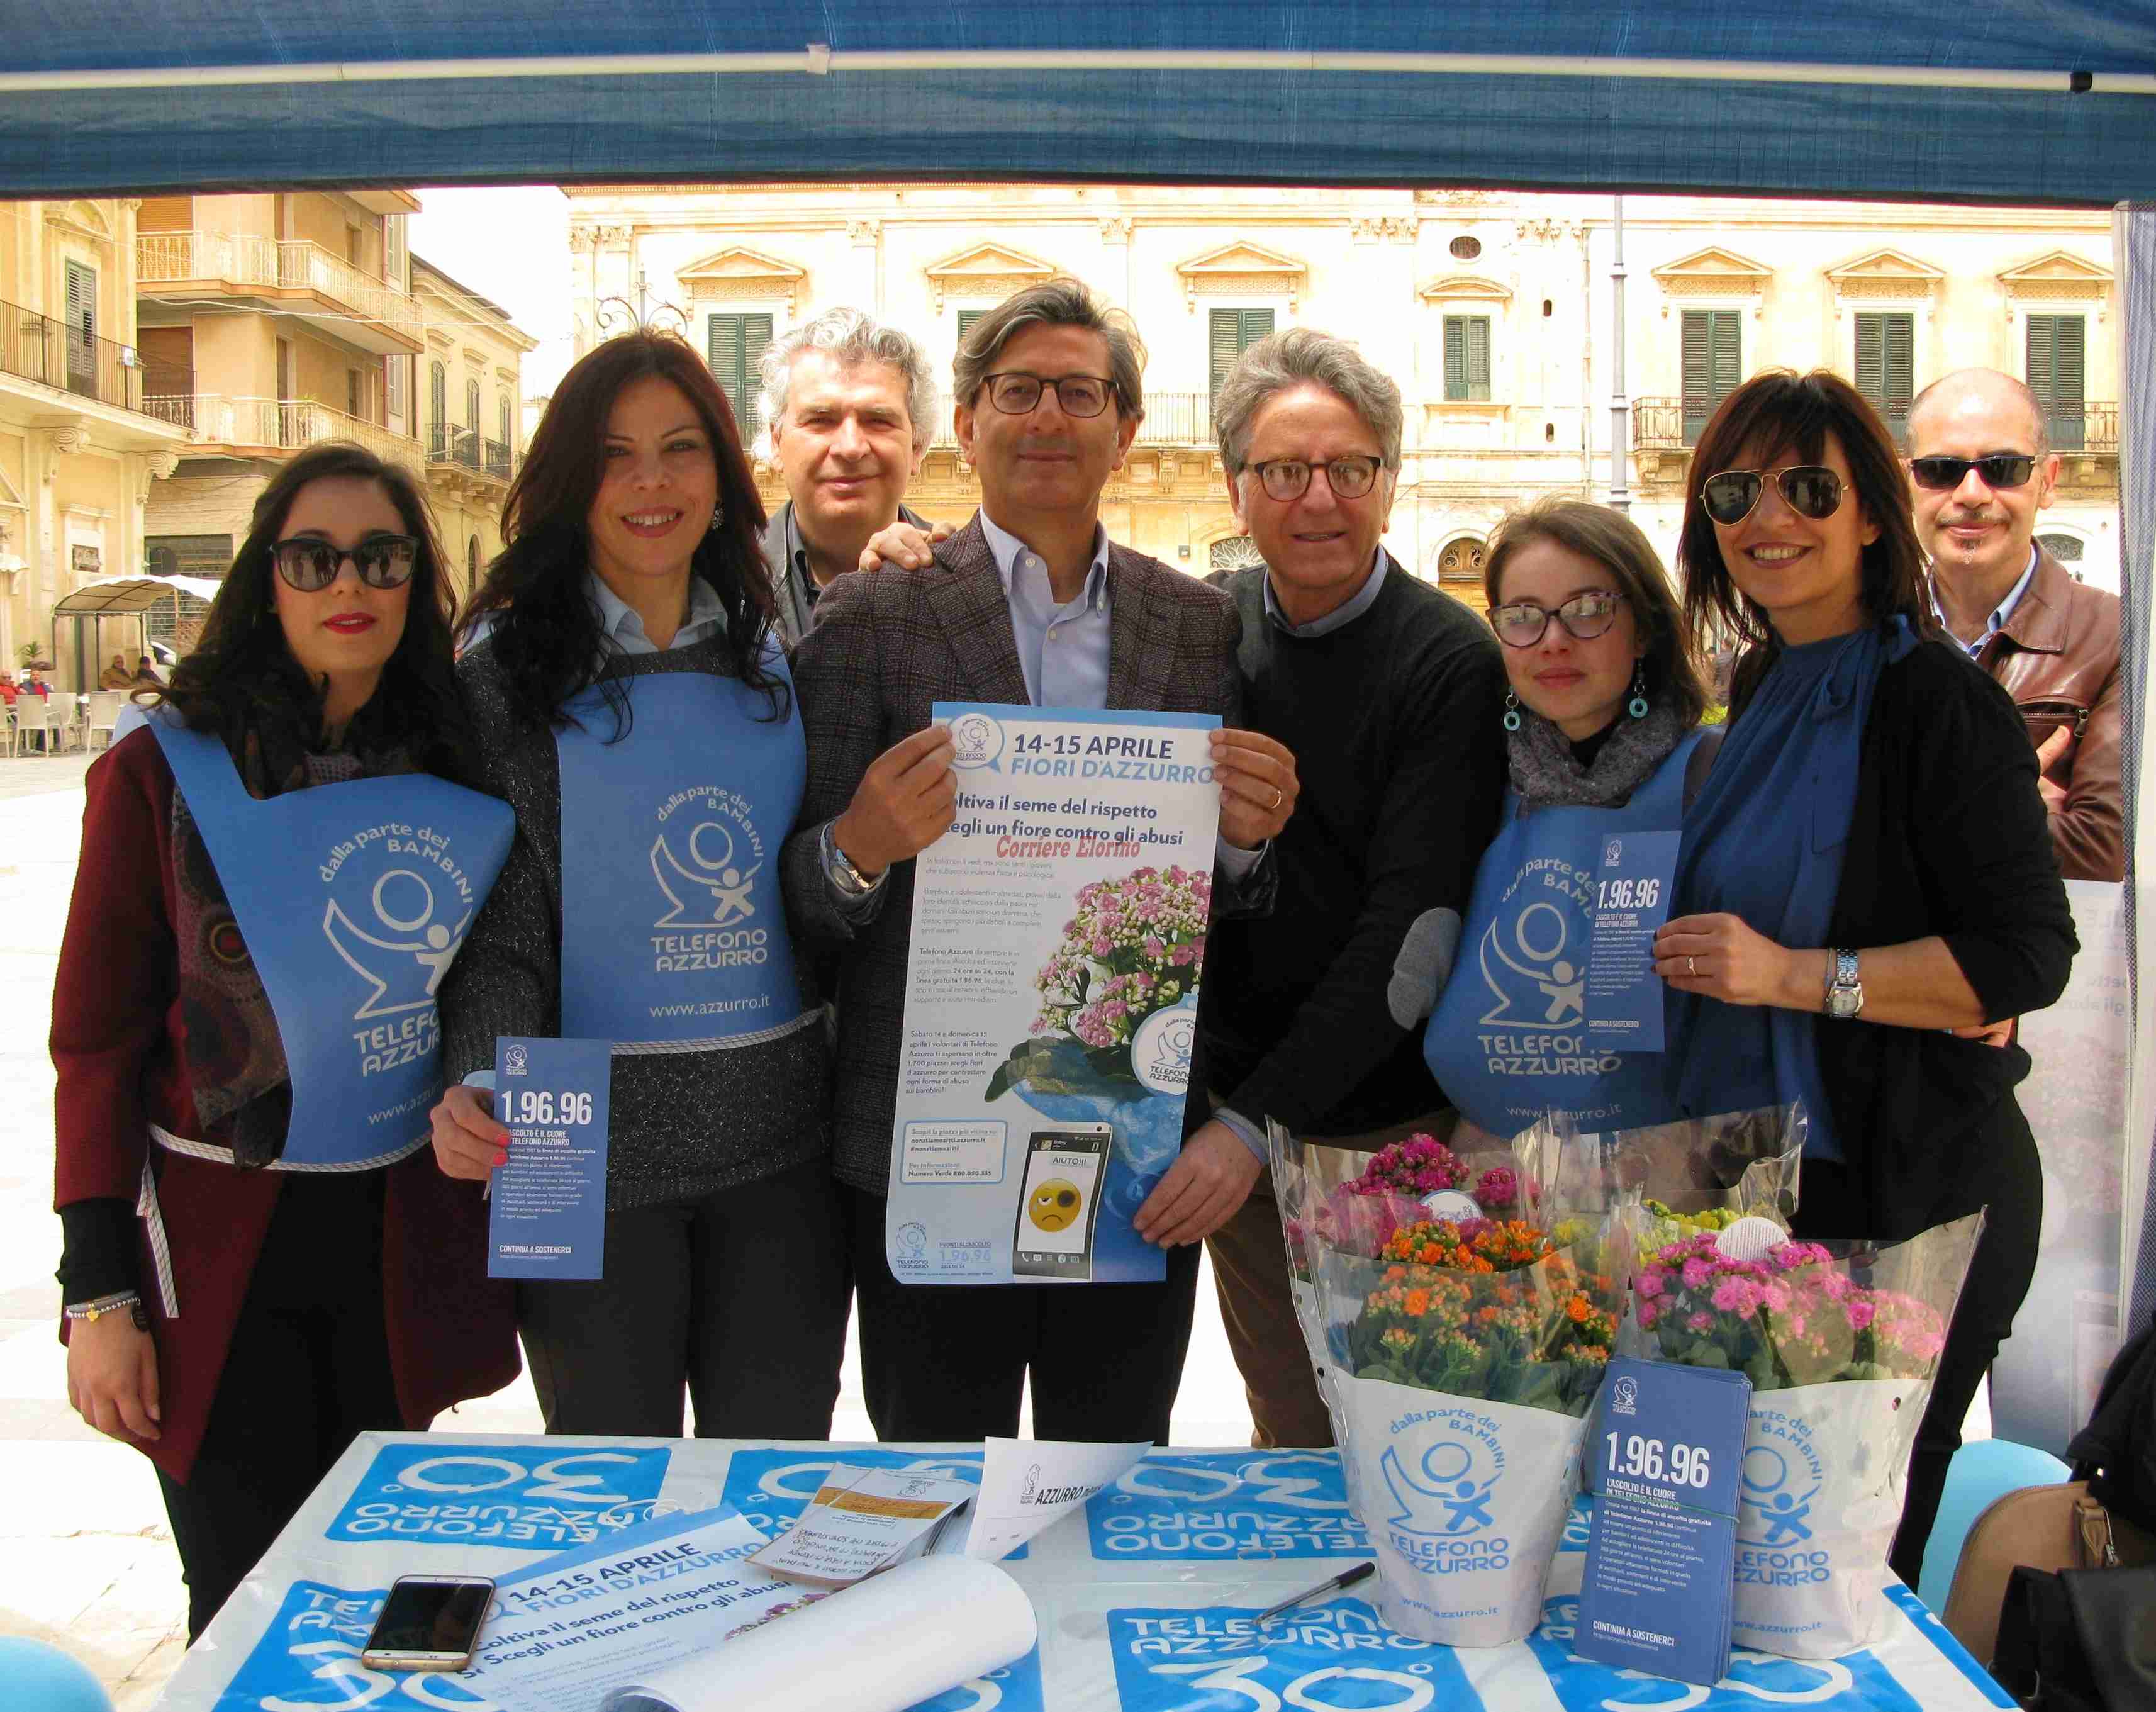 L’Associazione Arcobaleno oggi in piazza insieme a Telefono Azzurro. Un fiore contro gli abusi